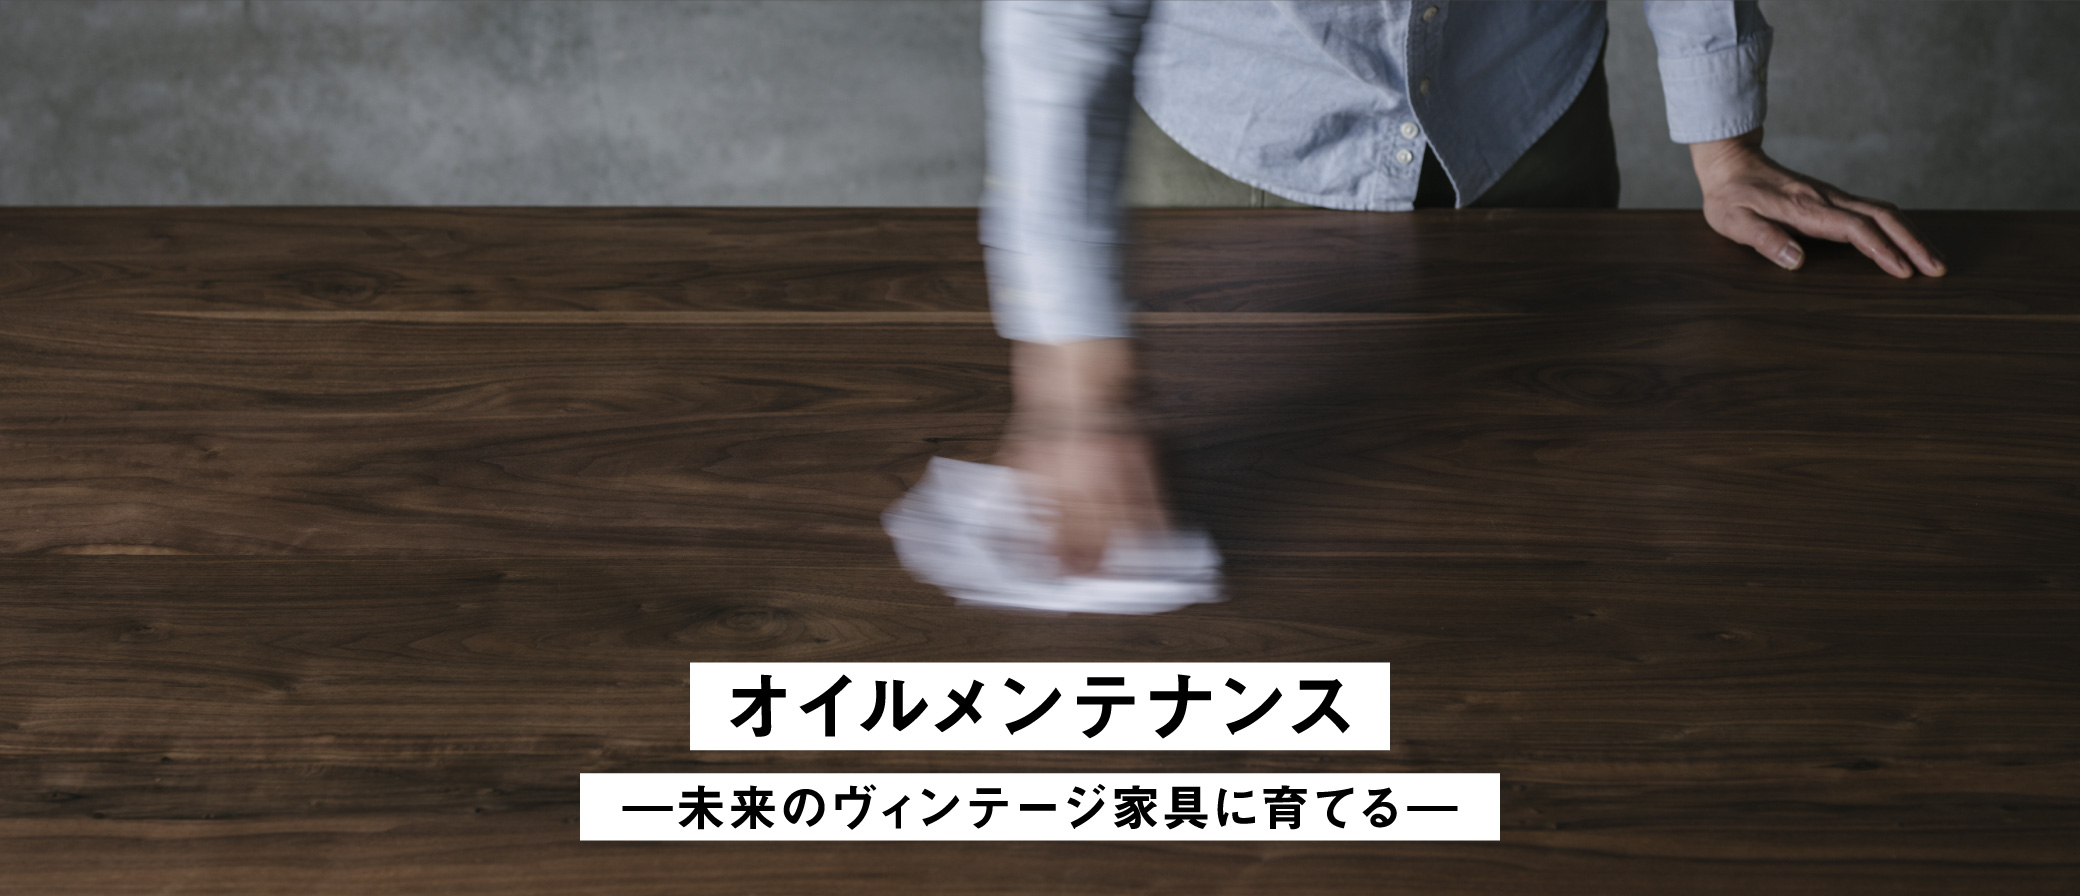 永く付き合う無垢家具だから大切なオイルメンテナンス。SOLID大阪でおすすめするメンテナンス方法をわかりやすくお伝えいたします。